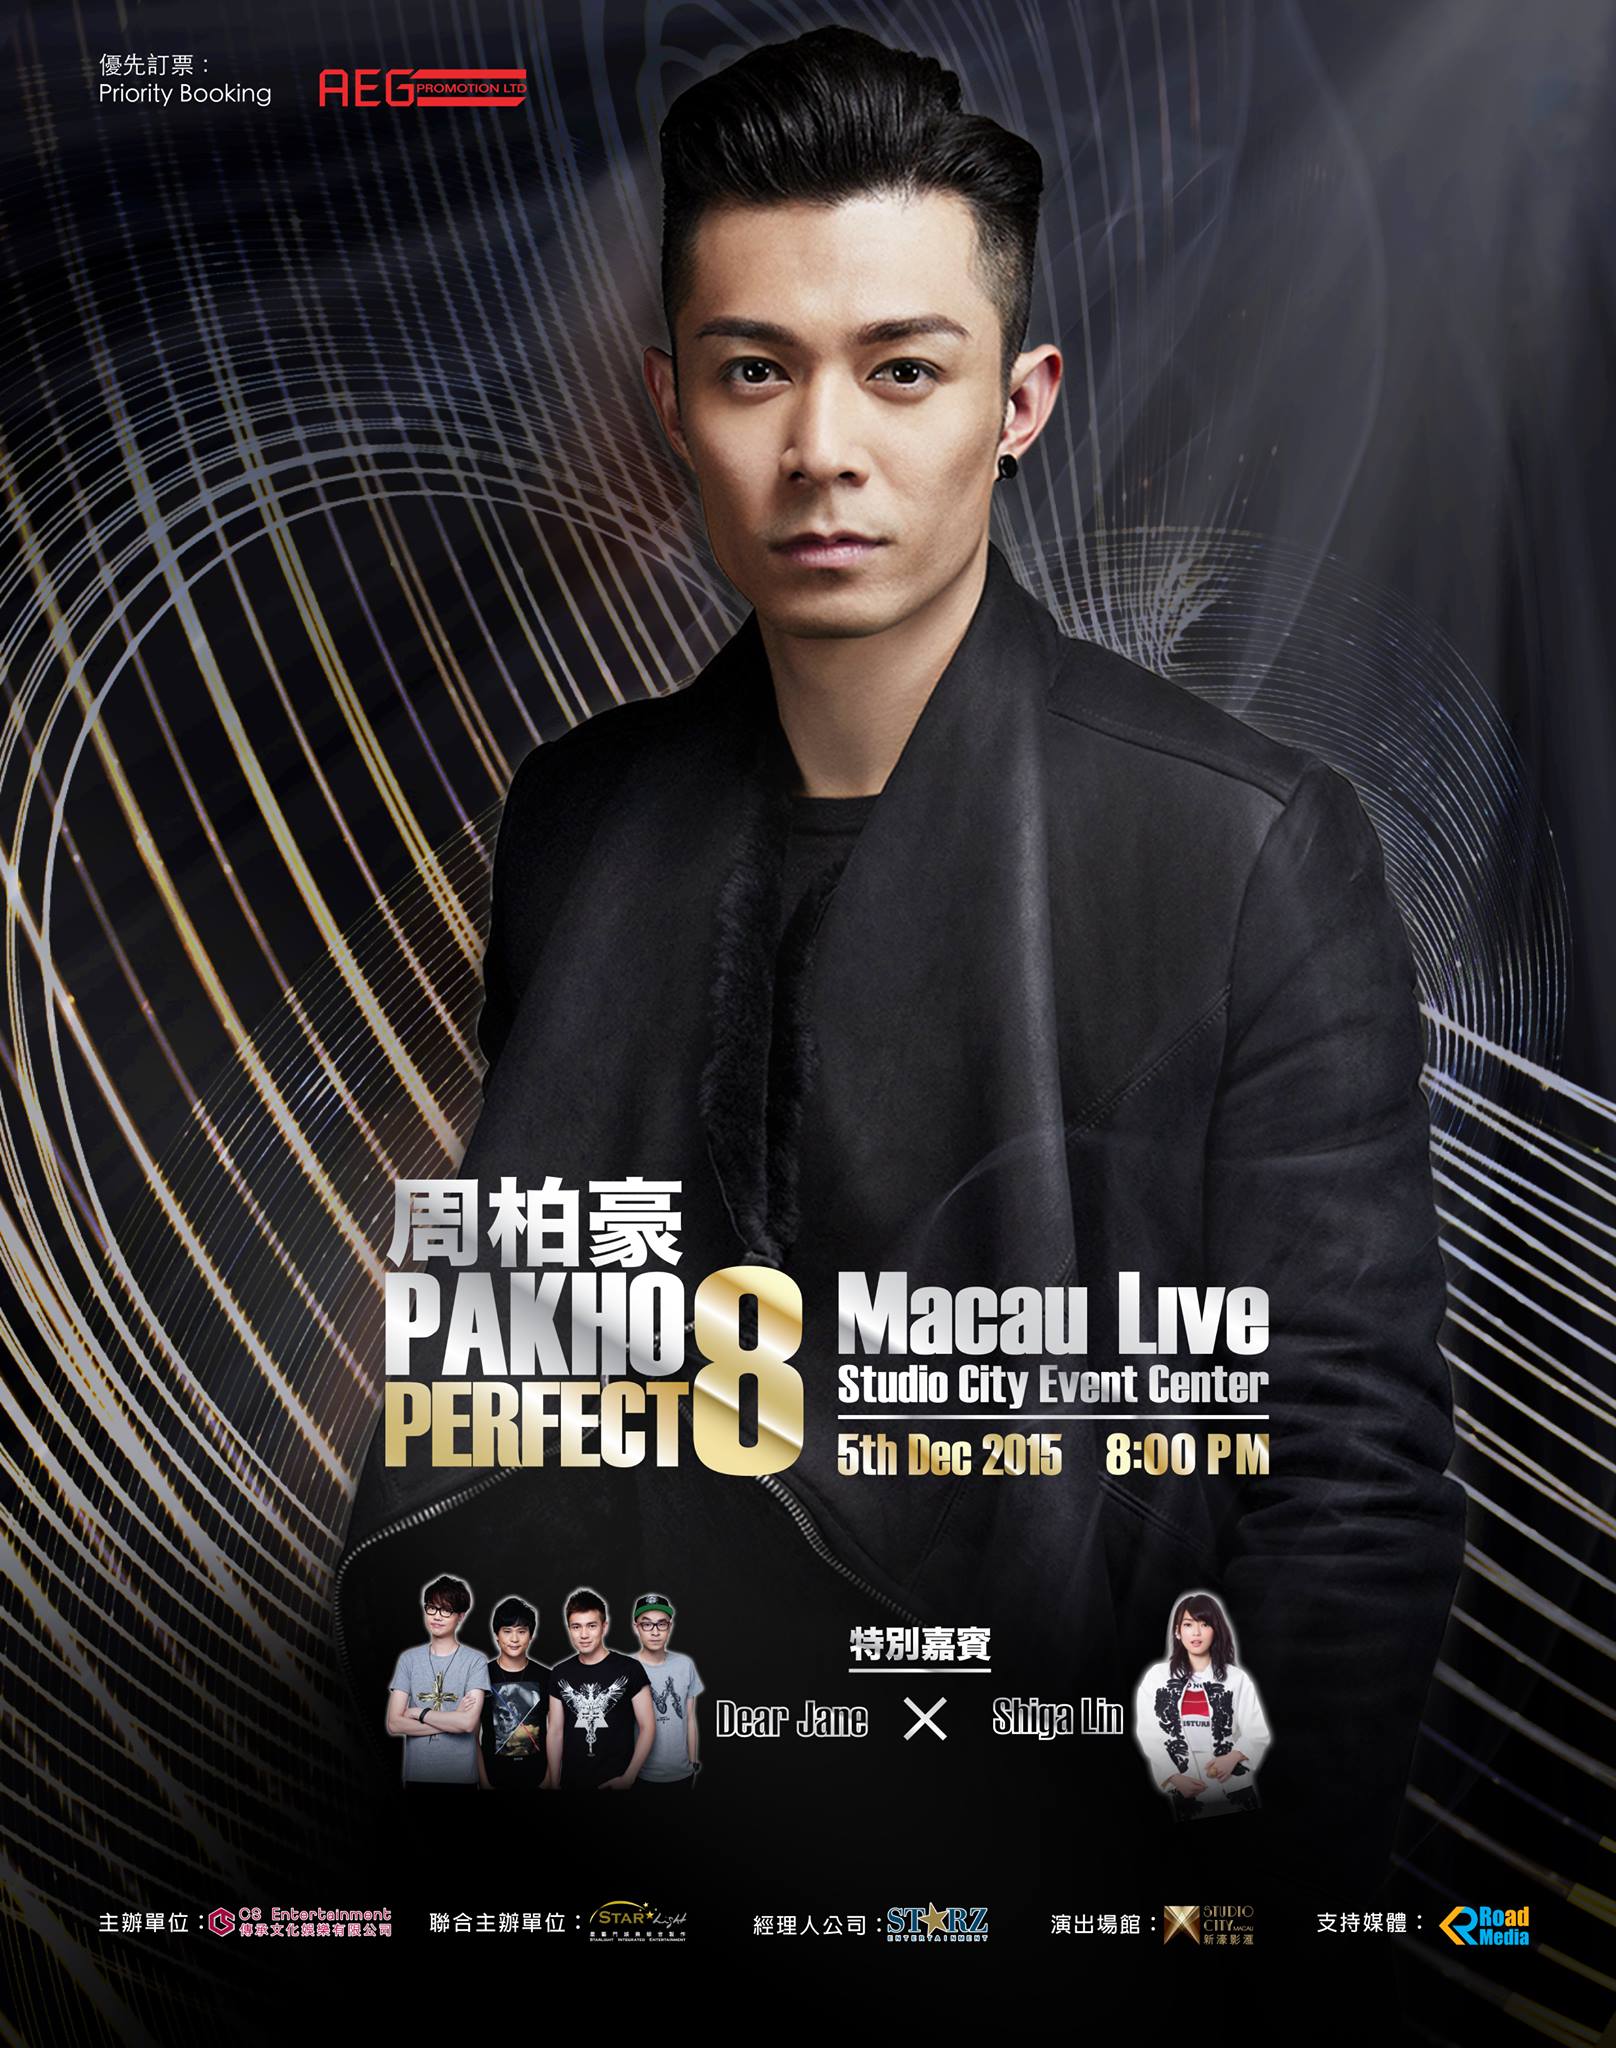 周柏豪 PAKHO PERFECT 8 Macau Live - VISA / MasterCard / 美國運通卡 / 中國銀聯卡 / PPS / PayPal / 支付宝優先訂票